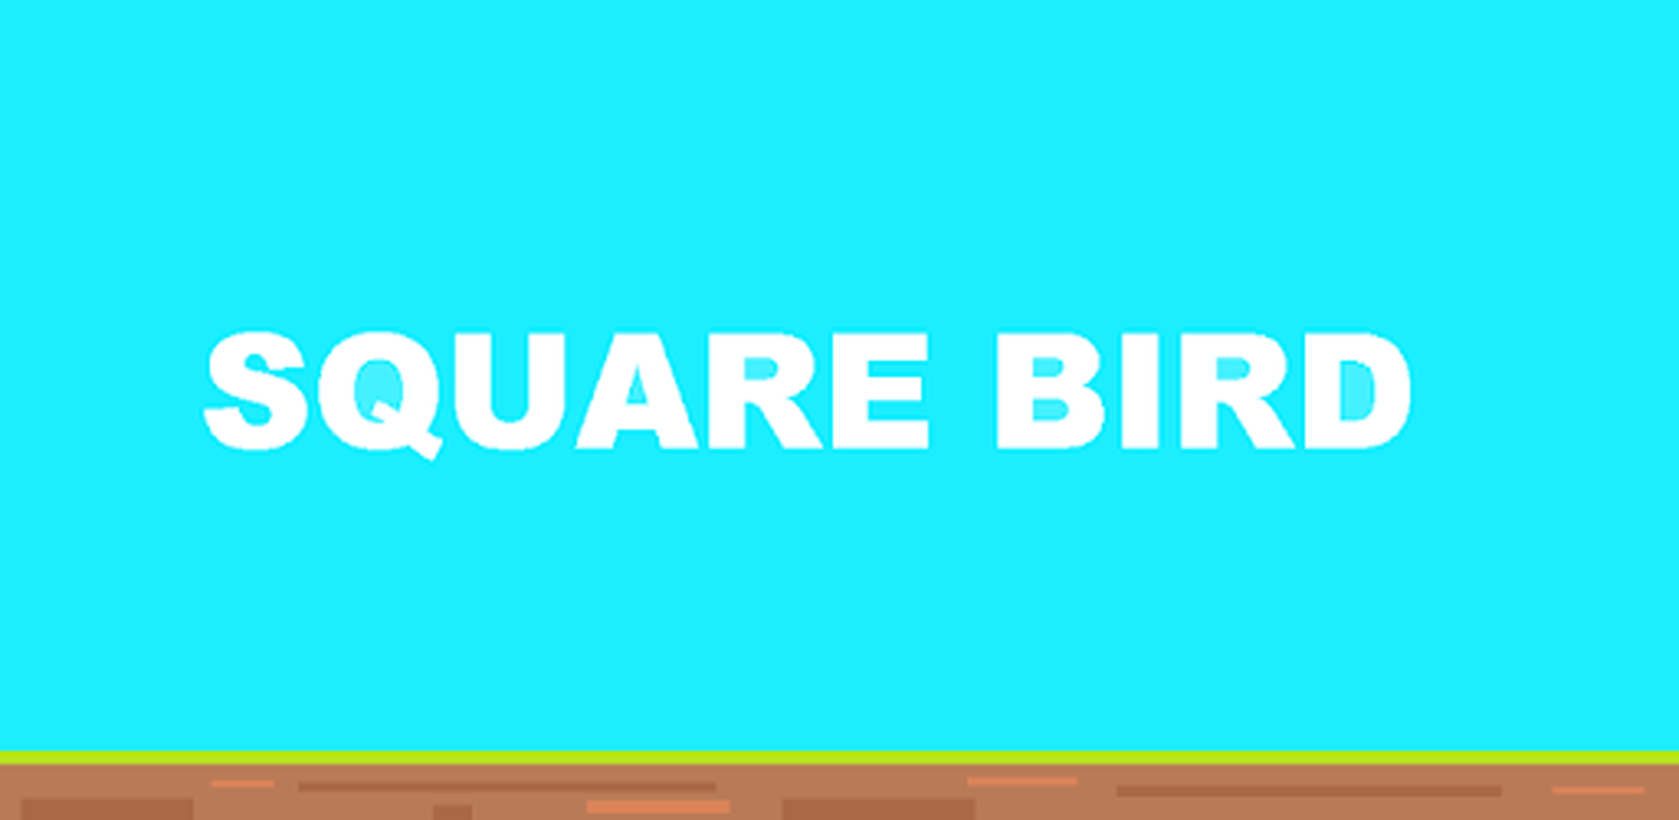 스퀘어 버드 - Square Bird PC 버전, 컴퓨터에서 설치하고 안전하게 즐기자 - 녹스 앱플레이어